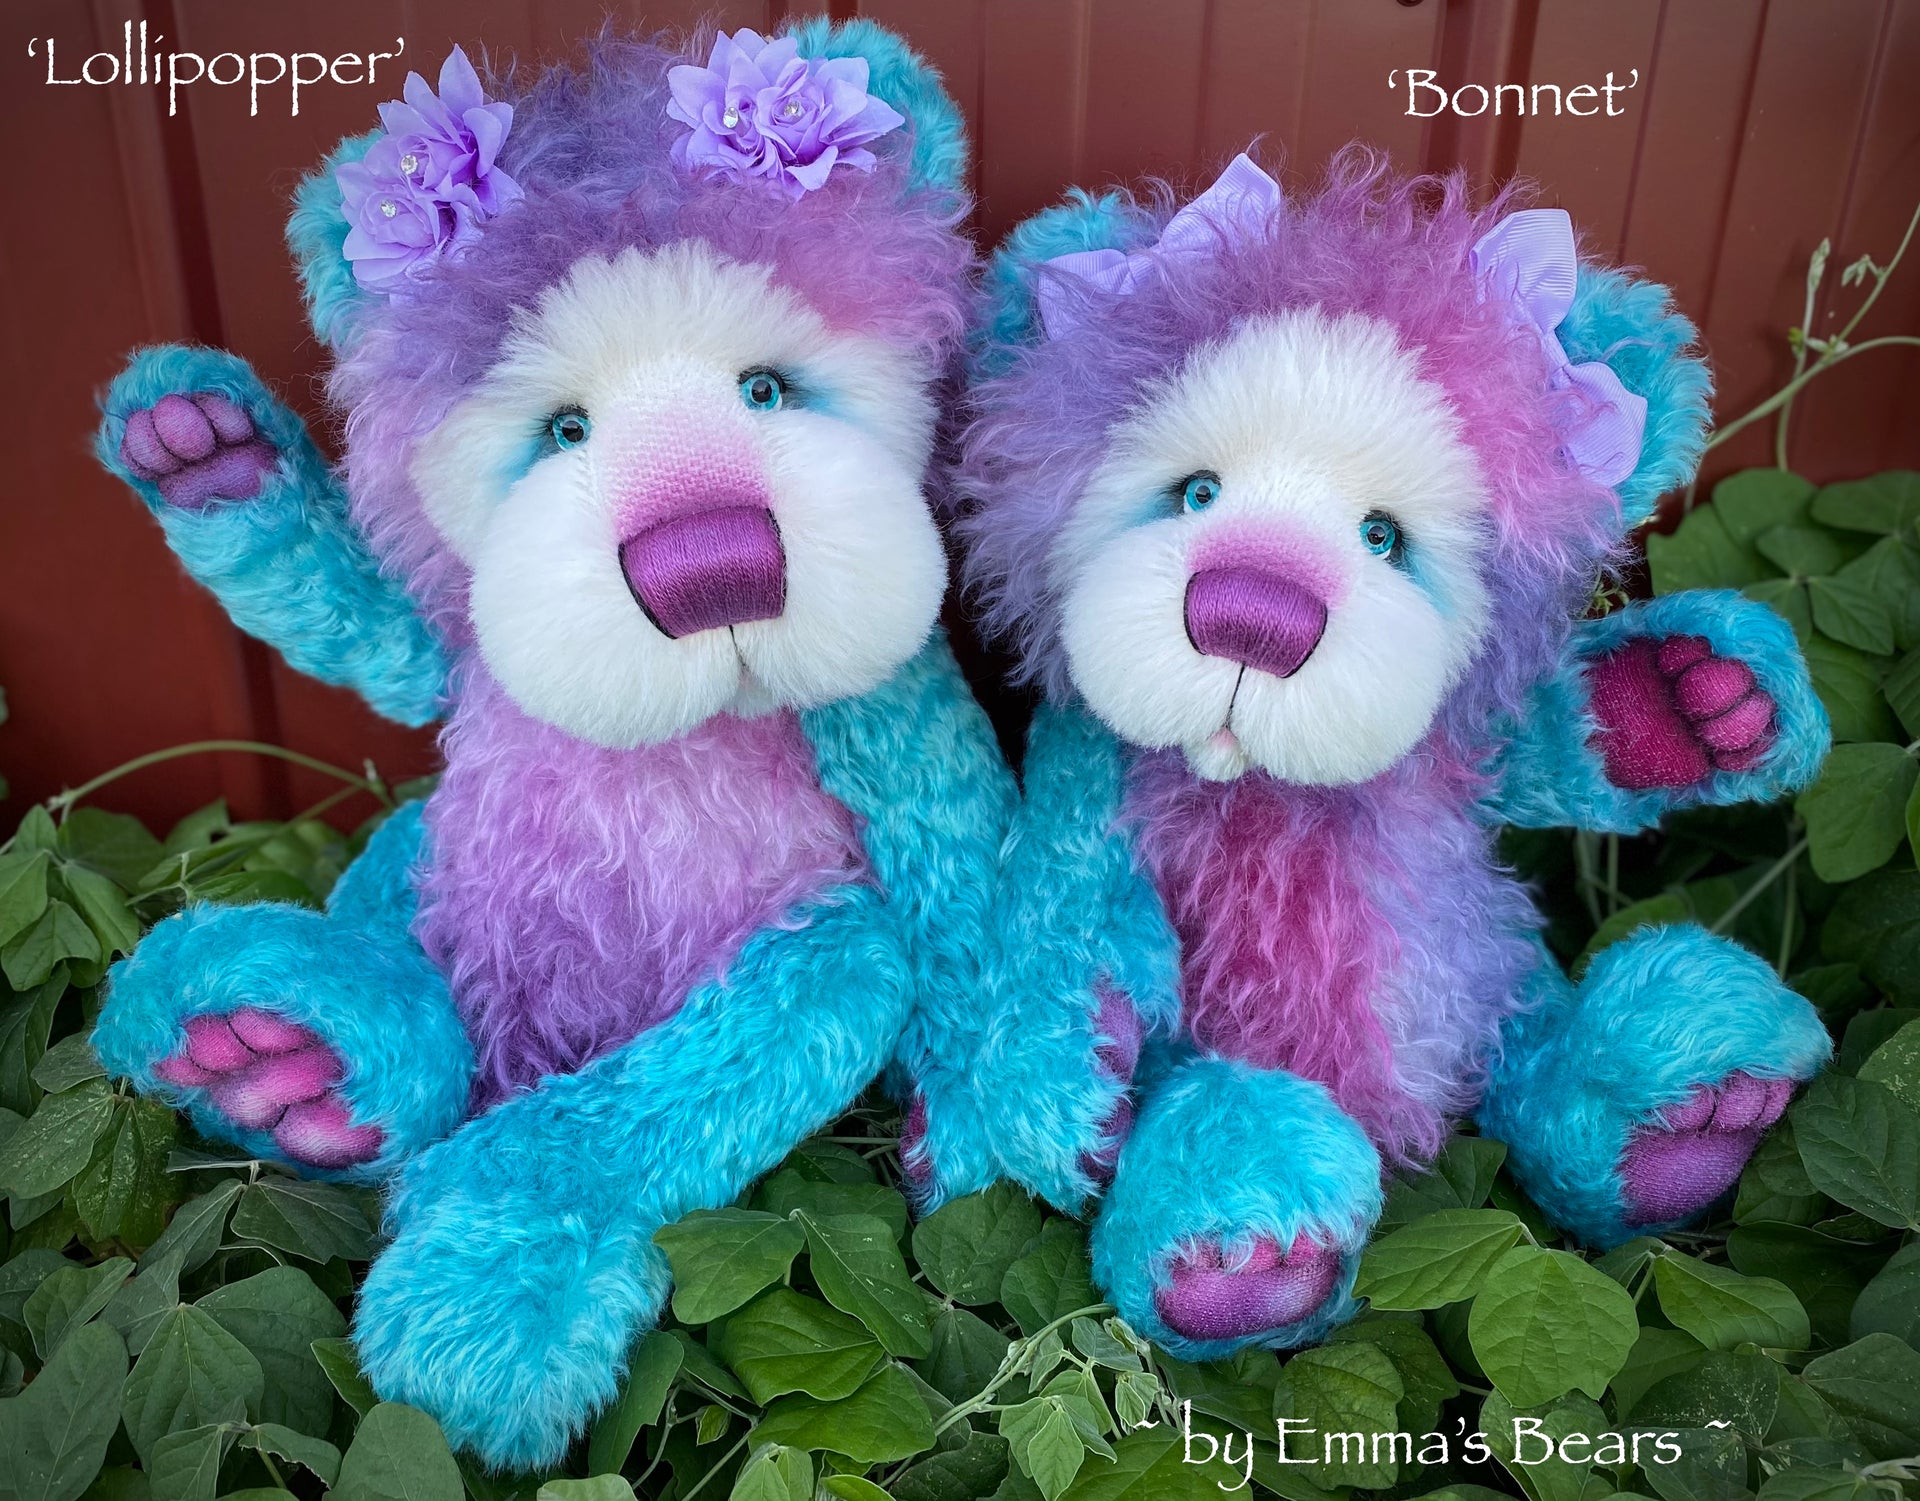 Lollipopper - 17" Hand-Dyed Curlylocks Mohair Artist Bear by Emma's Bears - OOAK